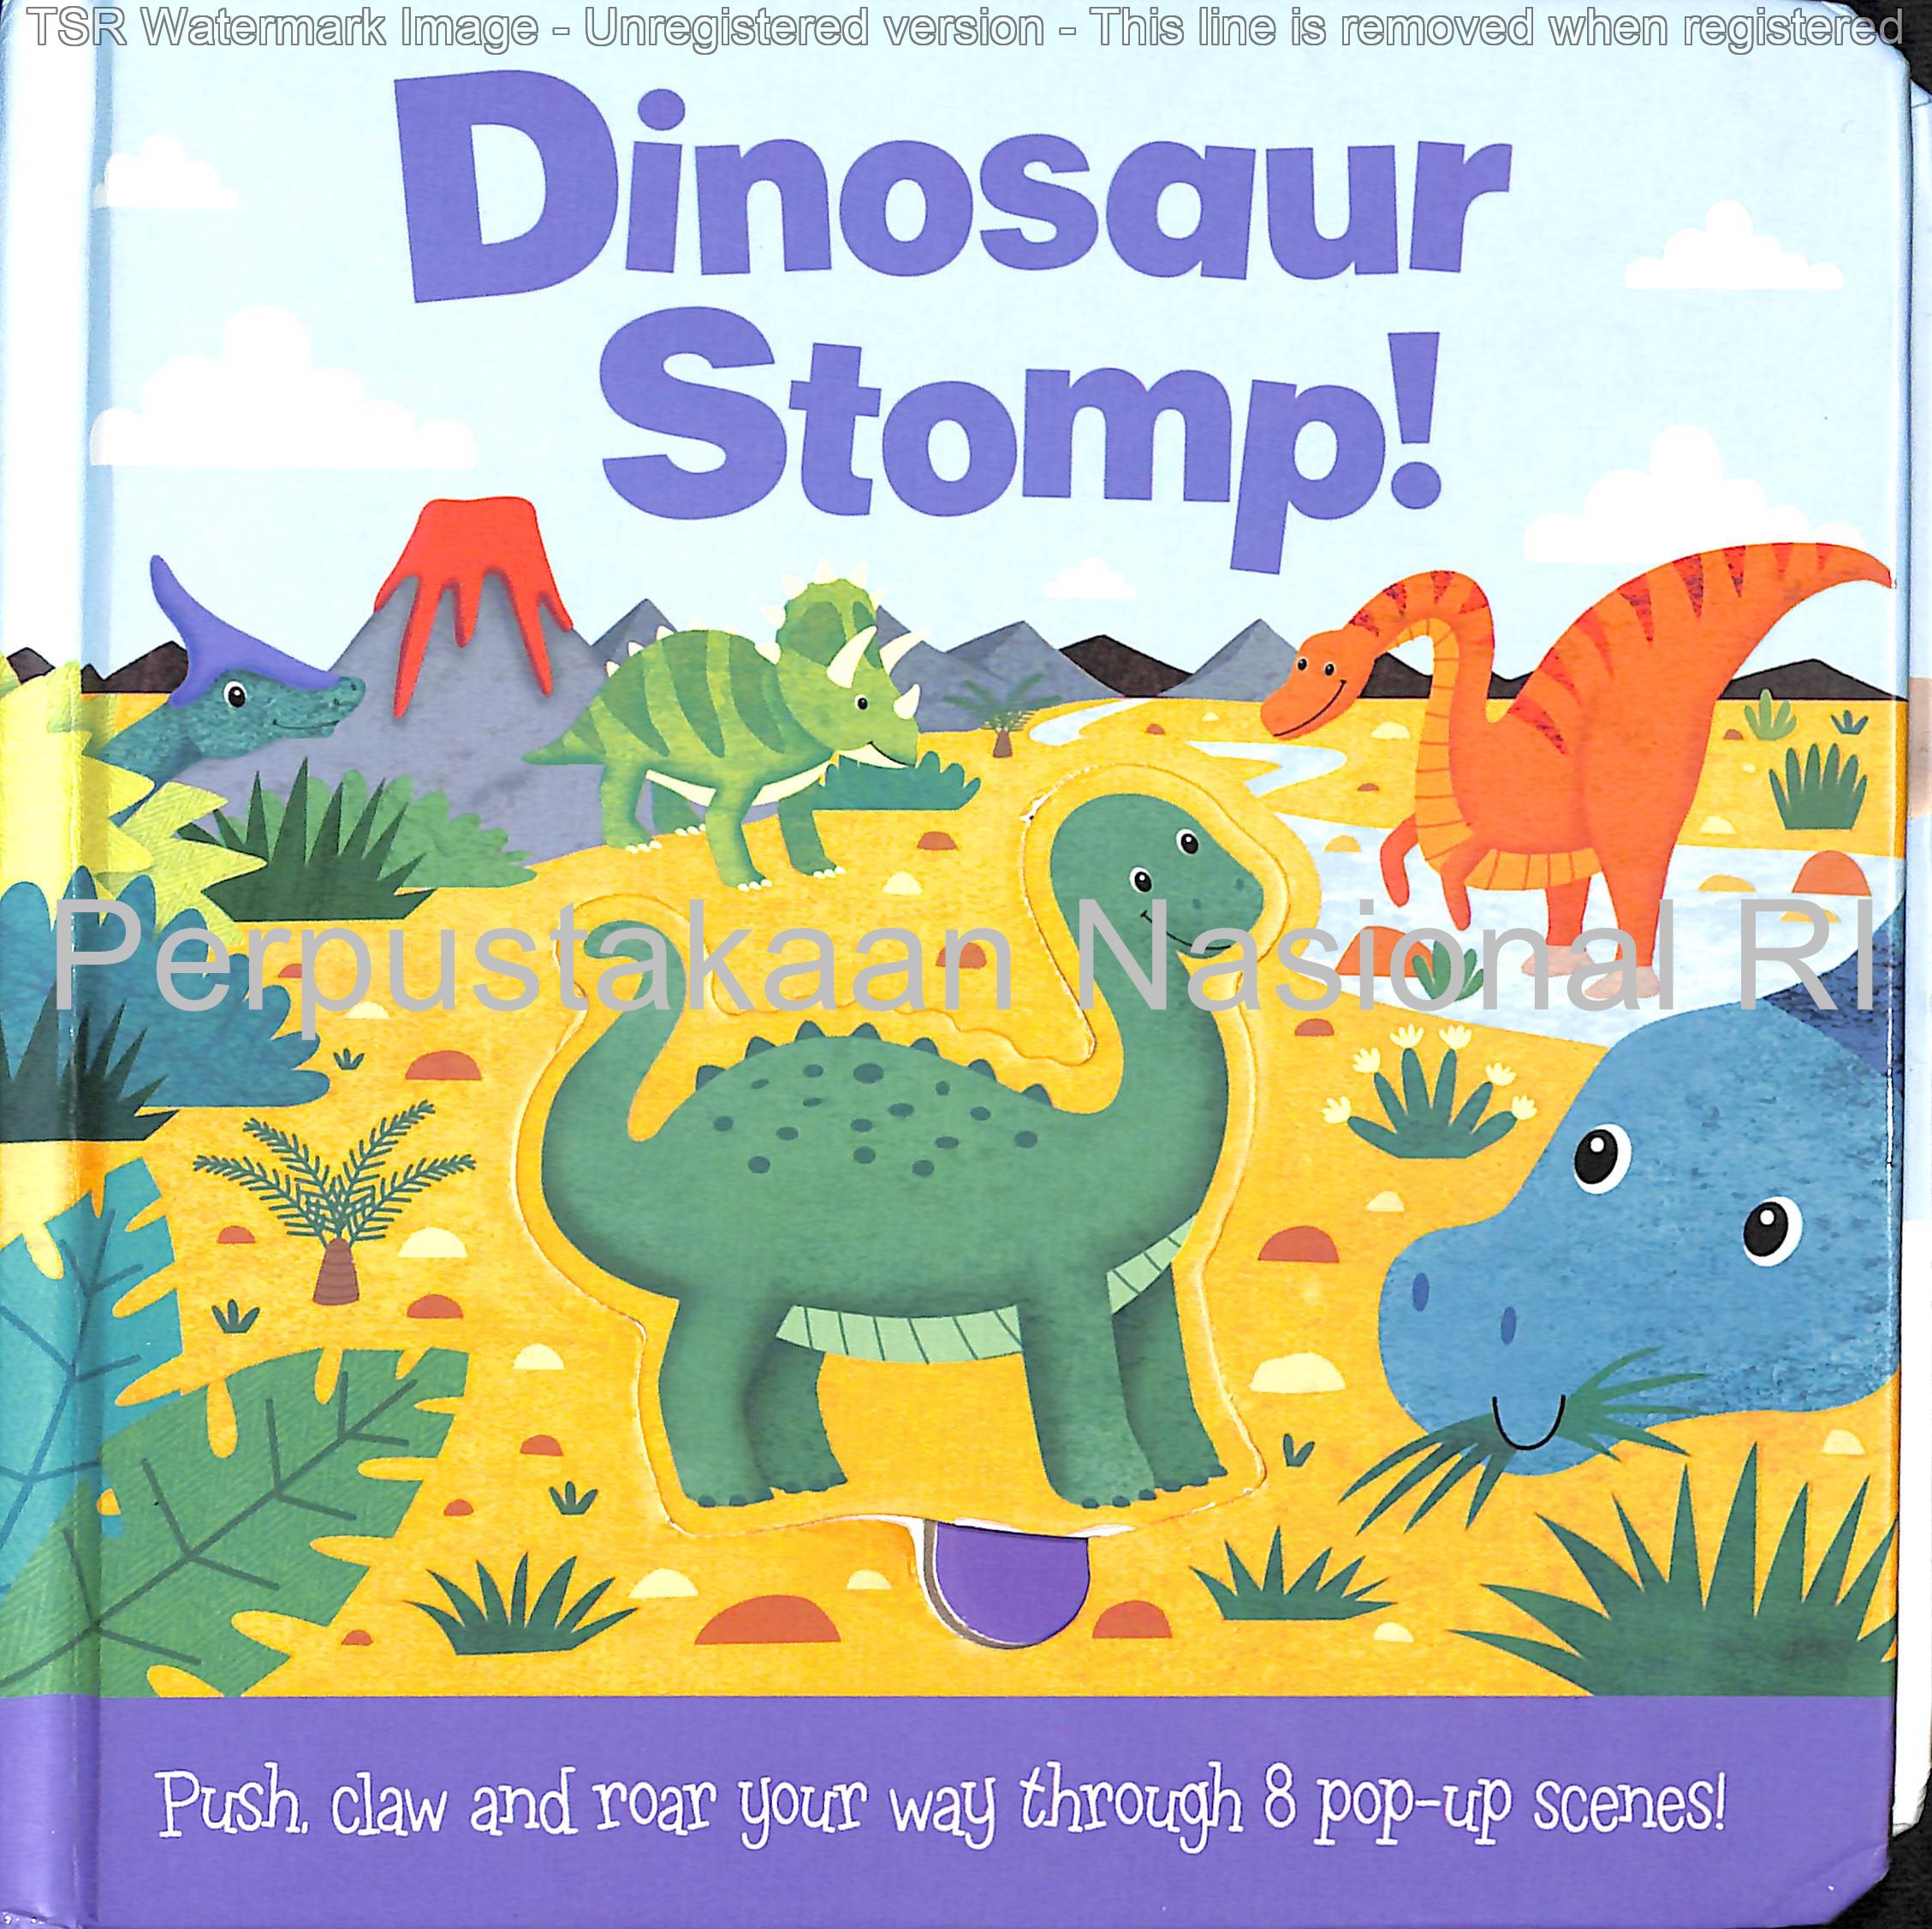 Dinosaur stomp!